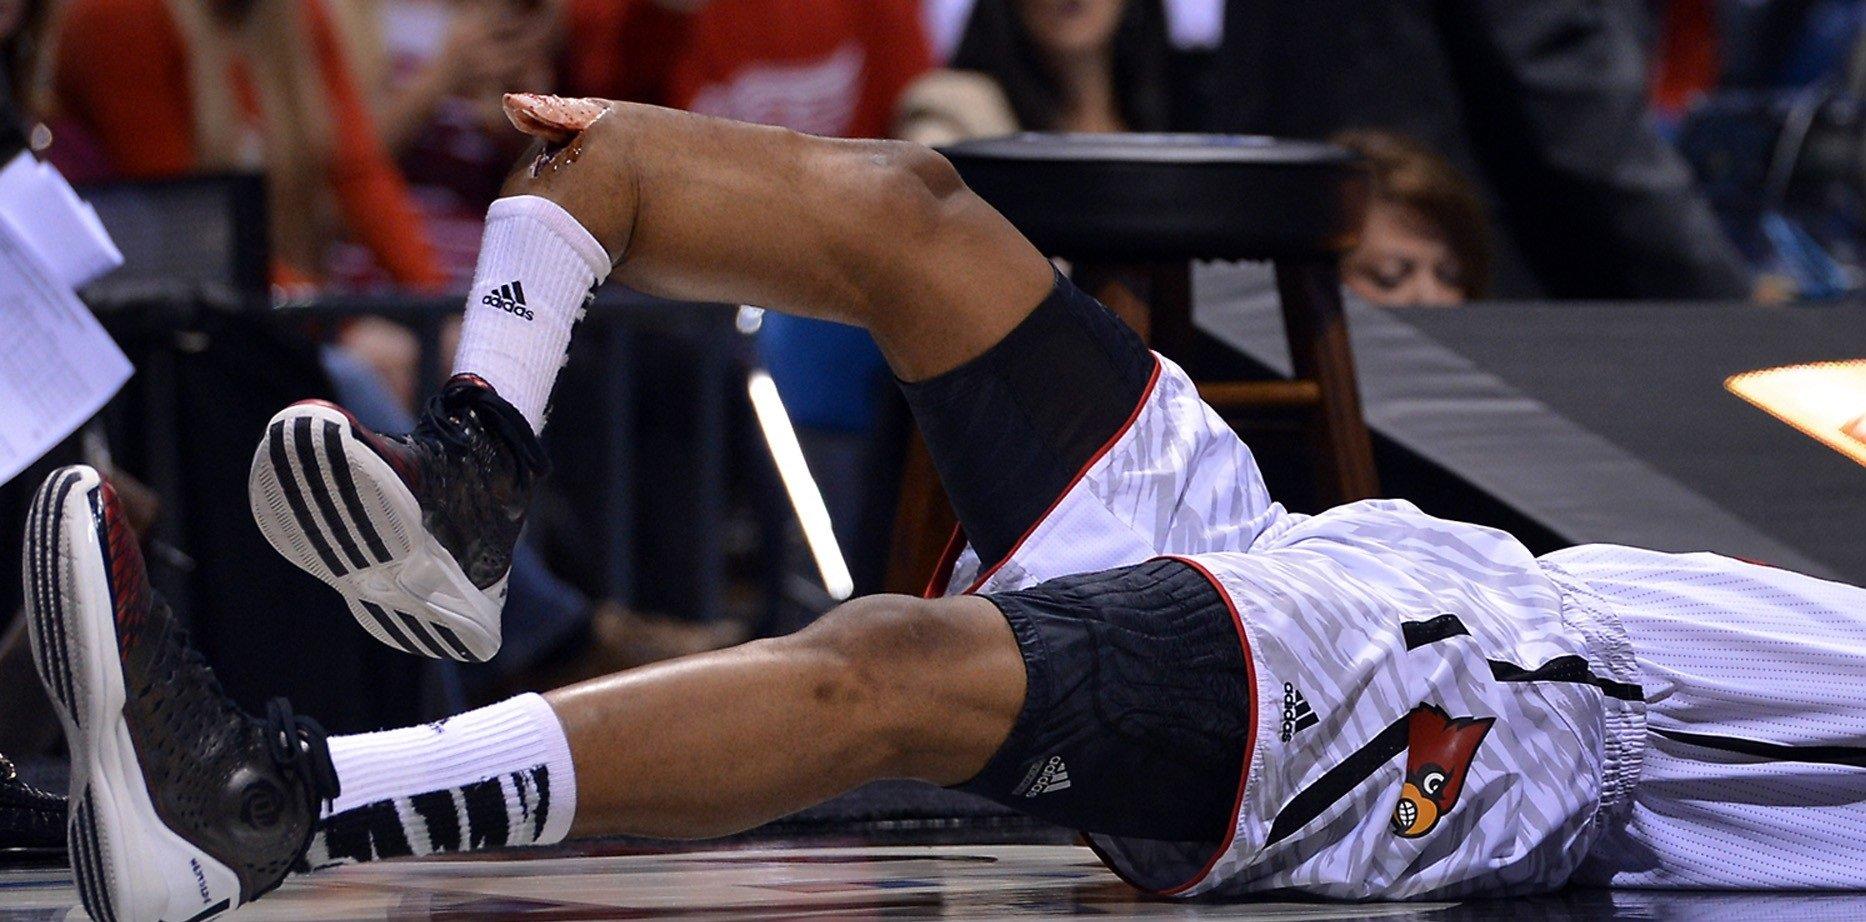 Резкий крутой перелом в чем нибудь. Кевин Уэйр перелом ноги. Пол Джордж баскетболист травма.